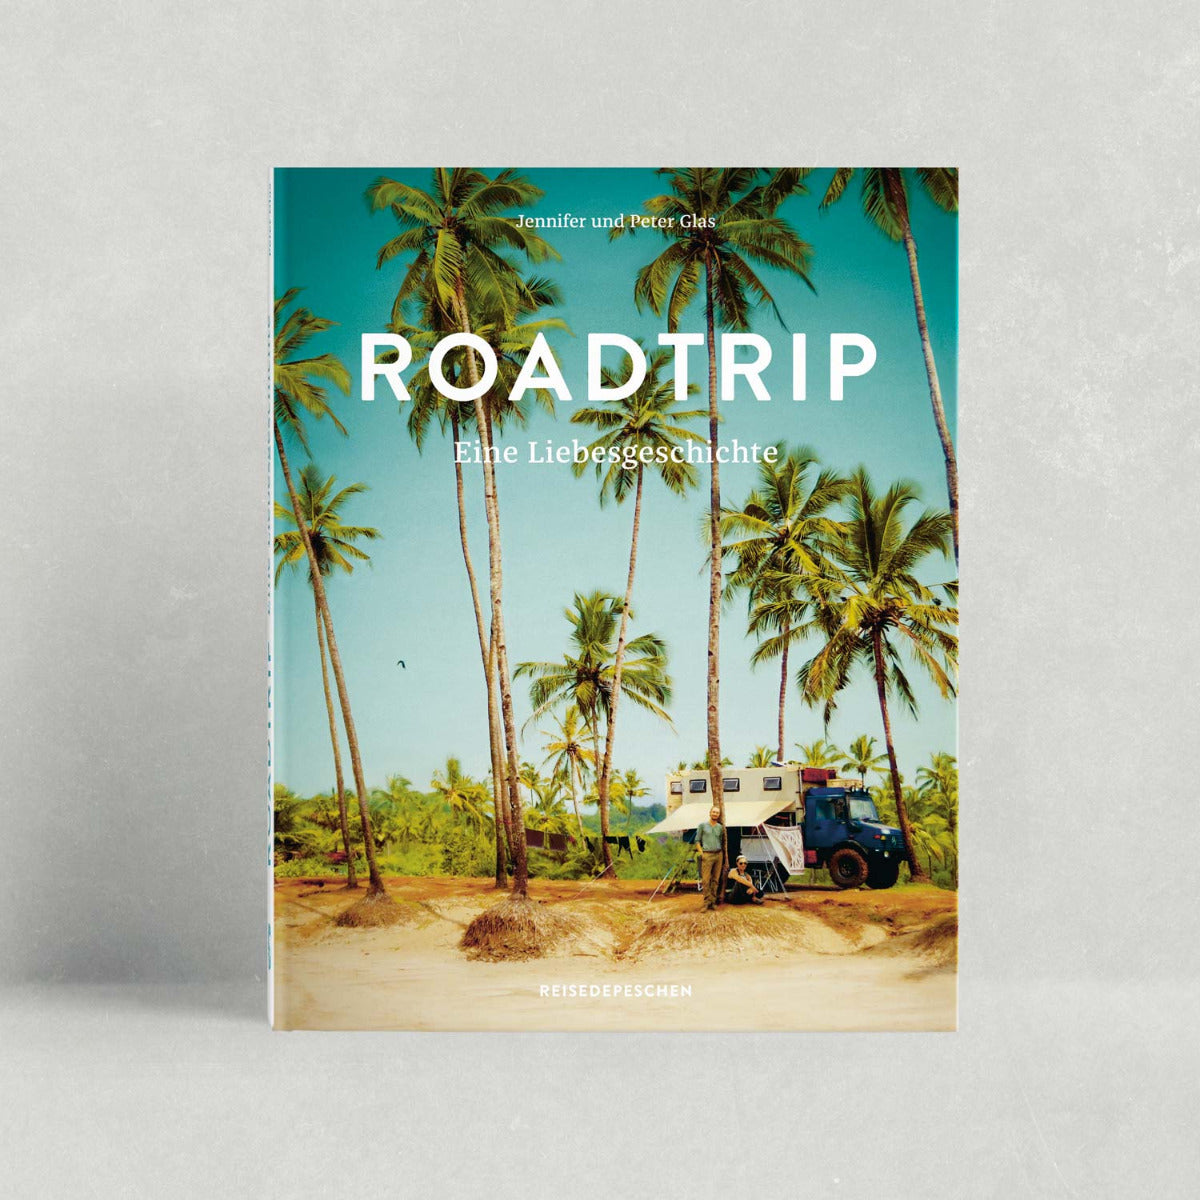 Roadtrip - Eine Liebesgeschichte